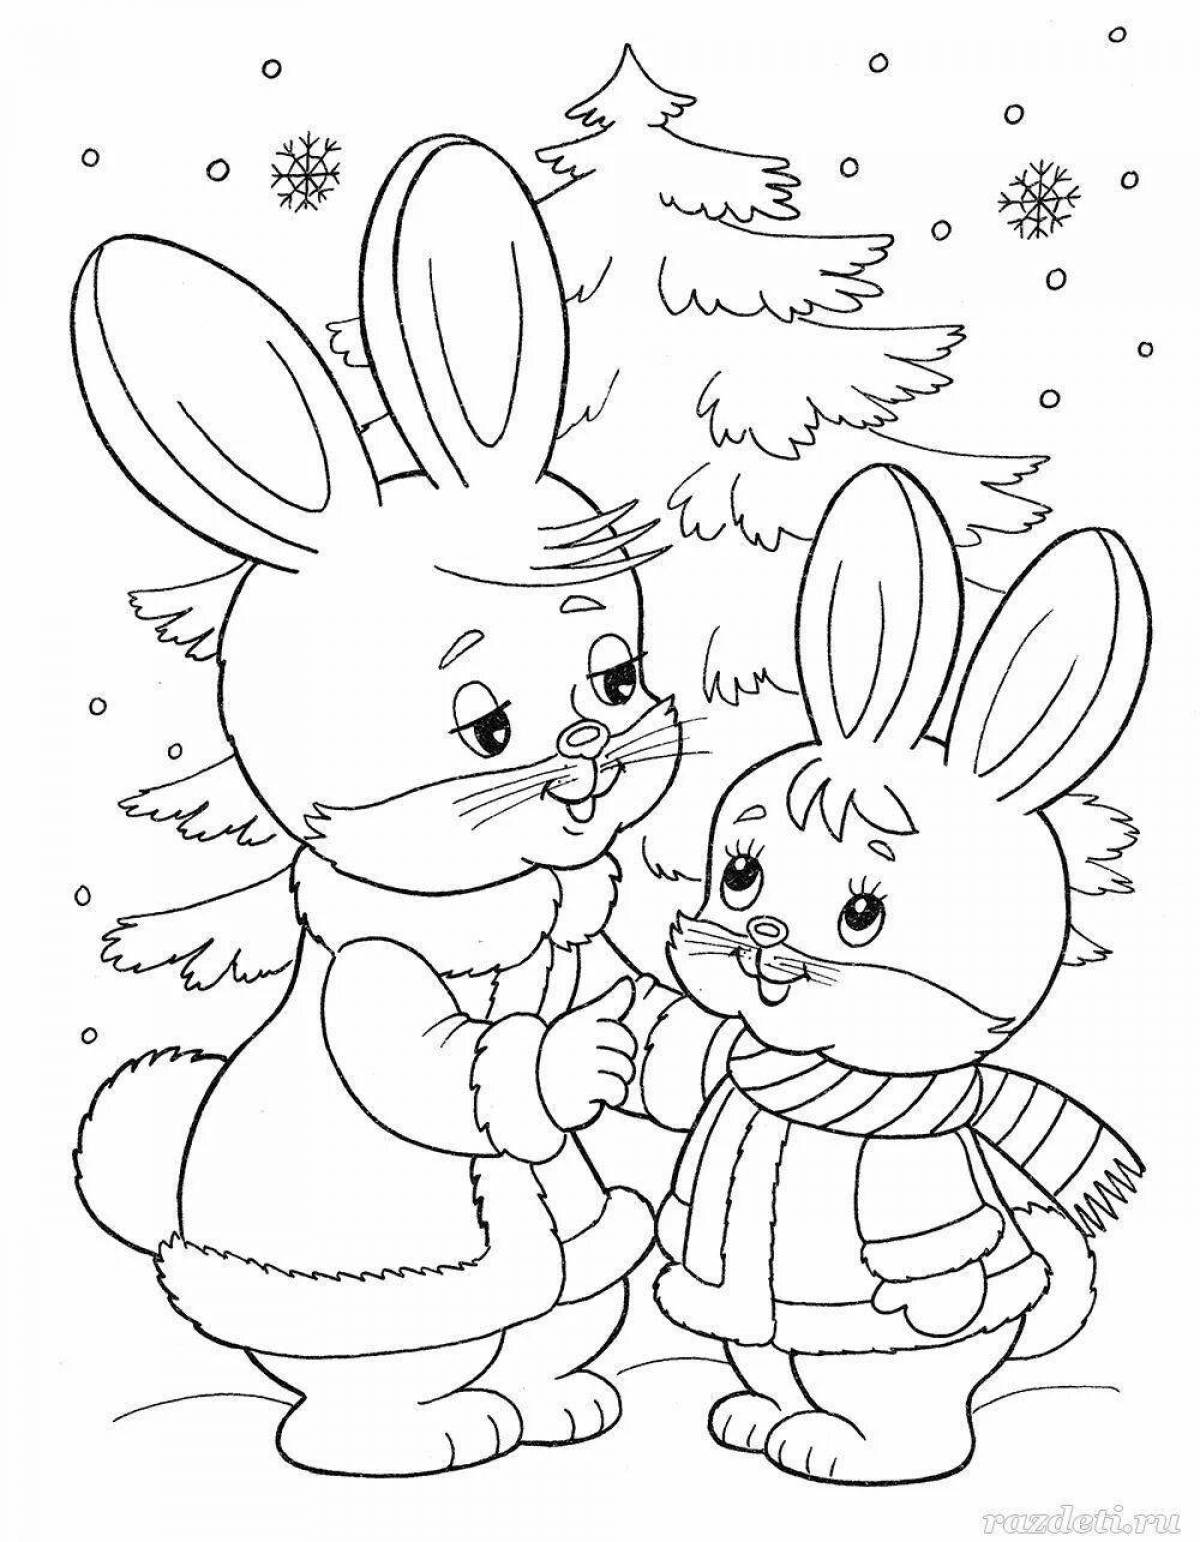 Фото Анимированная раскраска для детей 4-5 лет животные зимой